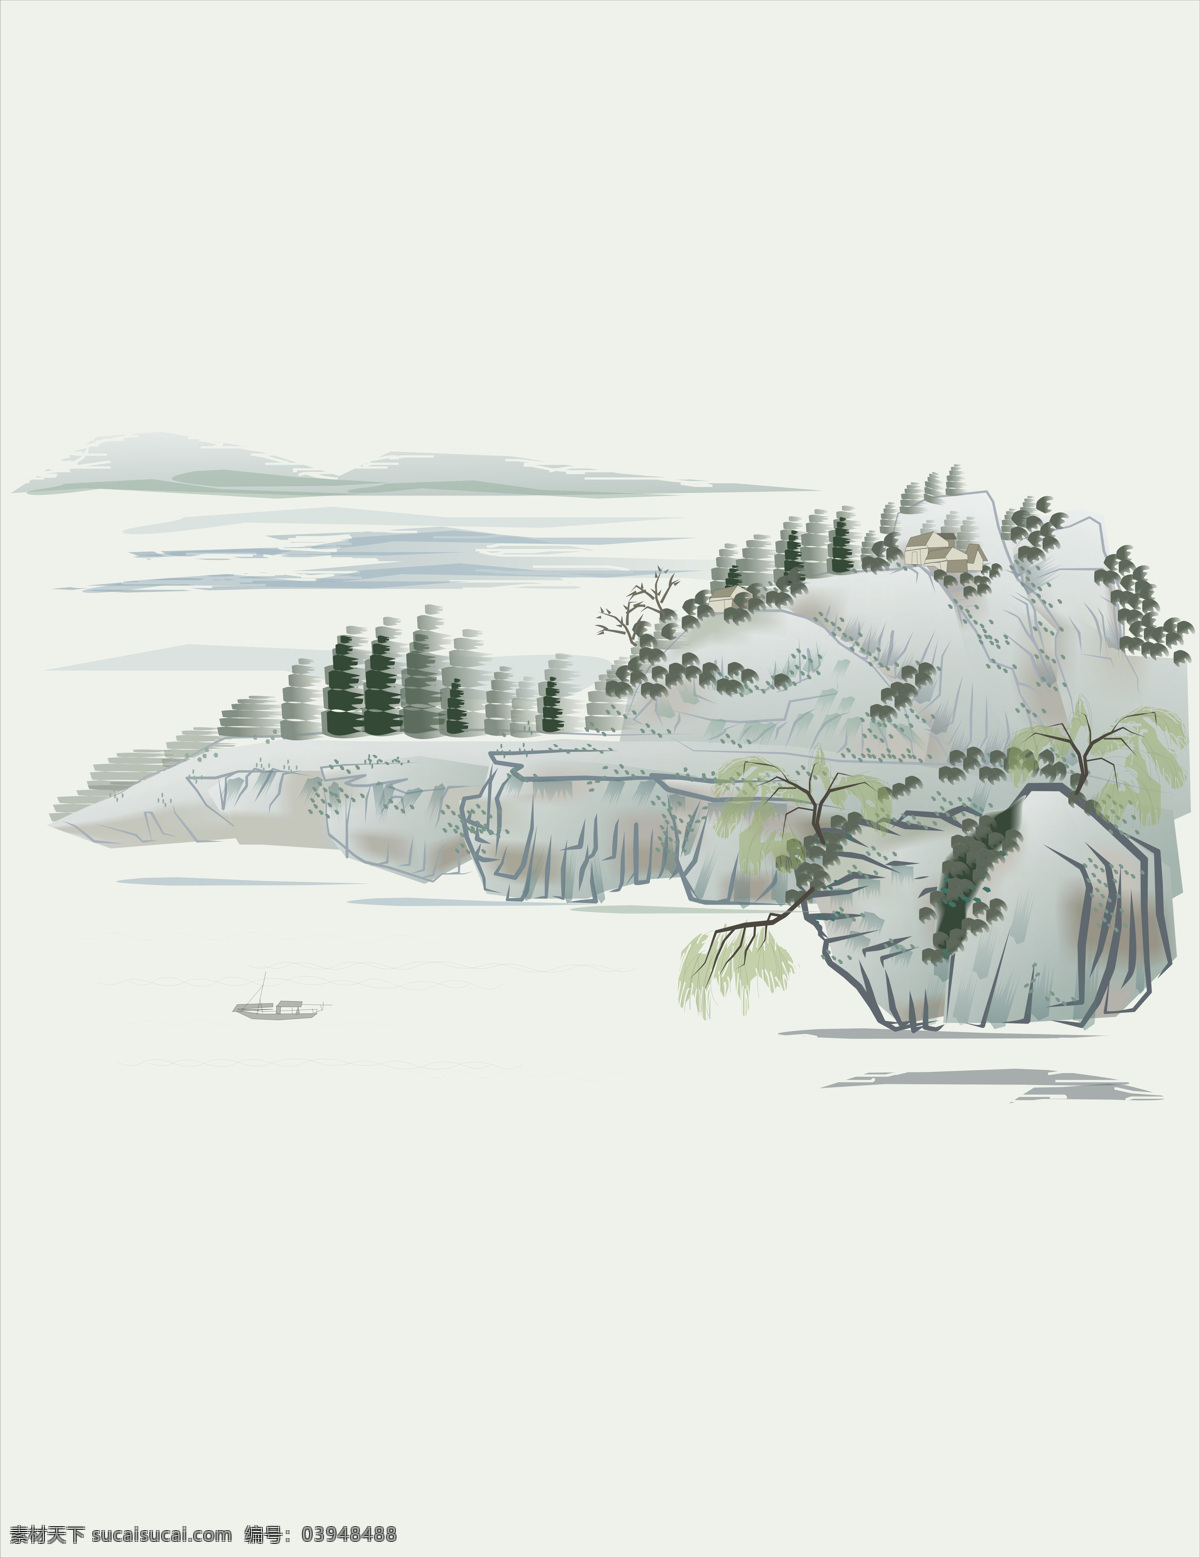 中国 山水画 元素 山石 树木 森林 湖泊 高雅 冷清 艺术文化 文化艺术